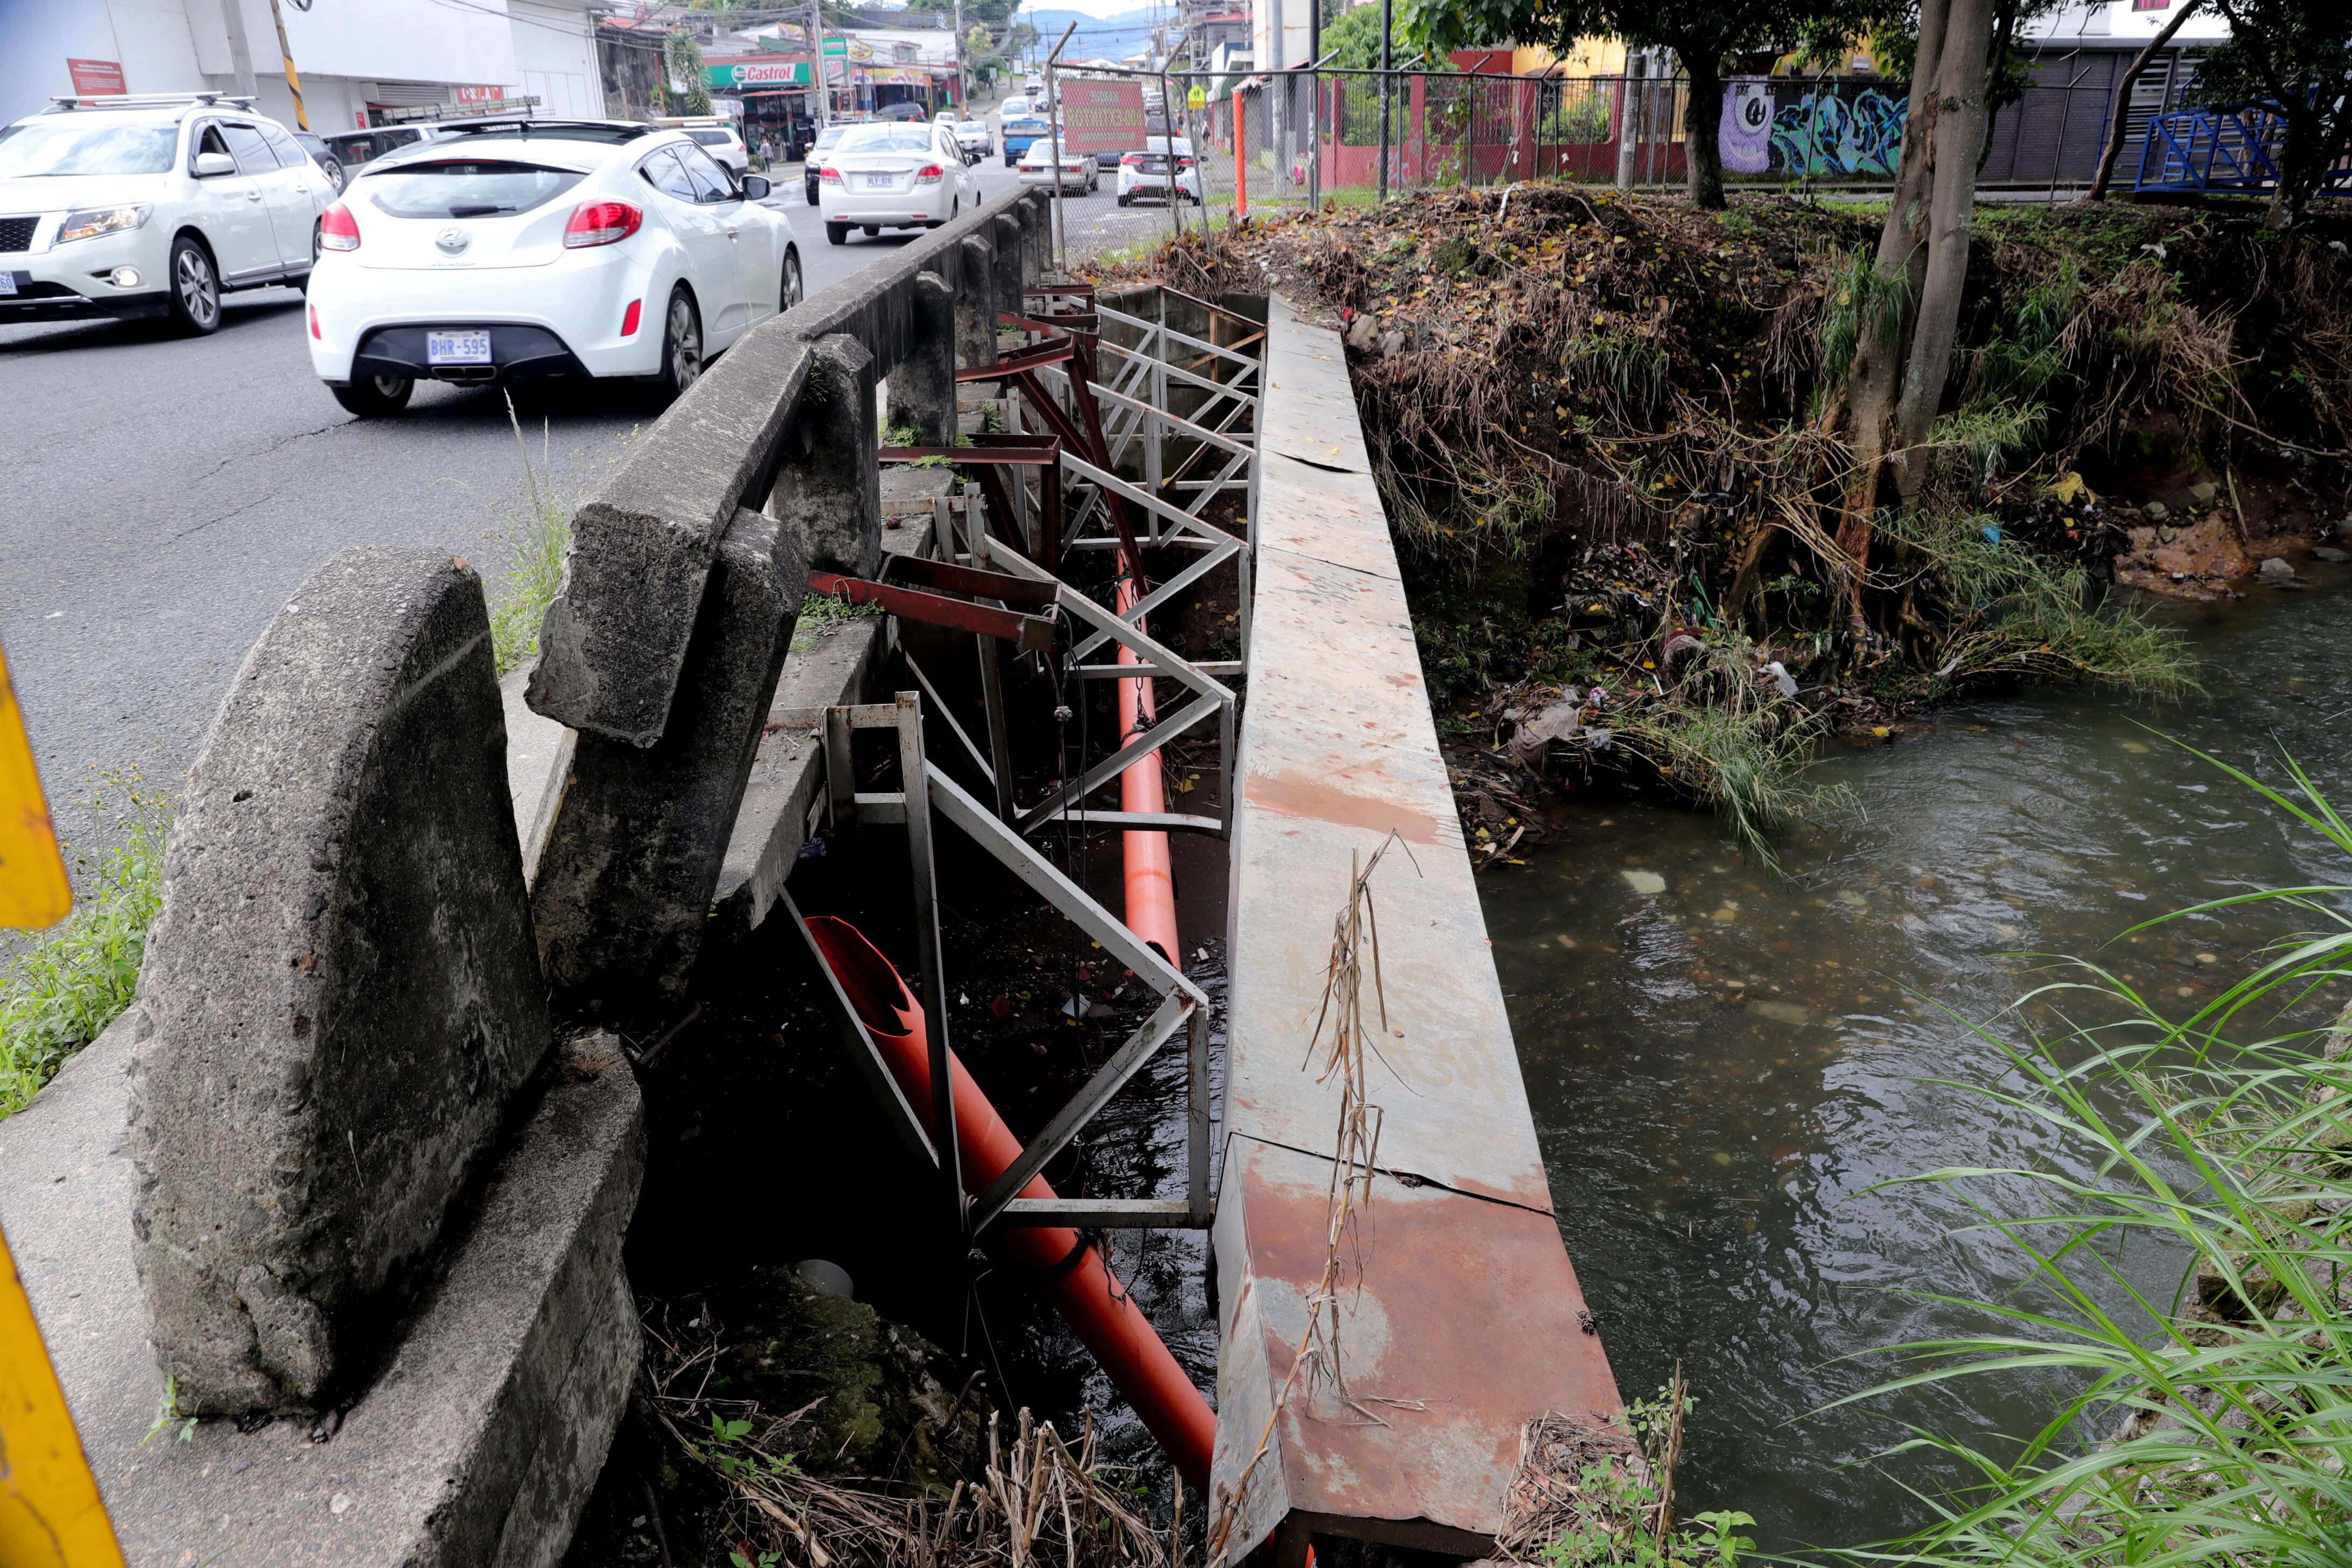 El puentes sobre el río María Aguilar, San Francisco de Dos Ríos, San José estaba en condición alarmante. Imagen captada en noviembre pasado.  Foto Alonso Tenorio